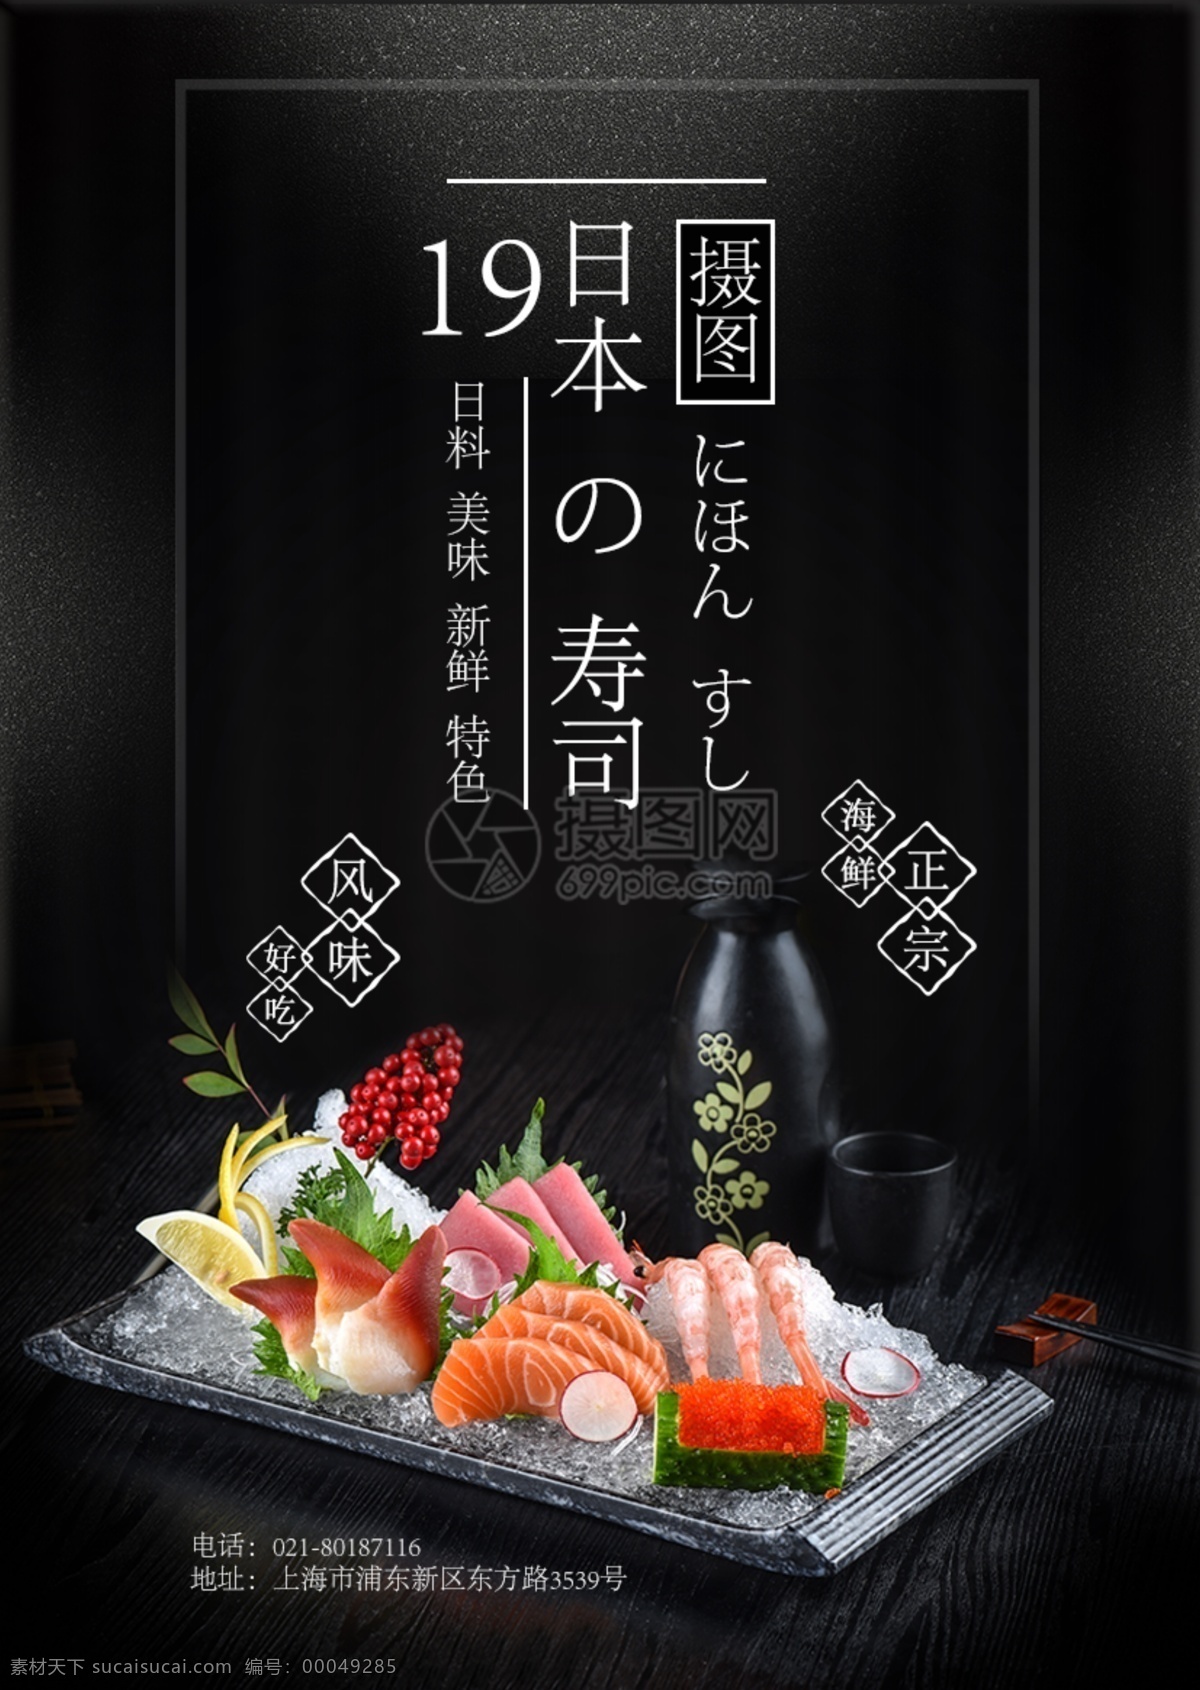 日本寿司海报 三文鱼 寿司 特色寿司 海鲜 日本寿司 紫菜包饭 饭团 日料 北海道风味 美食餐饮